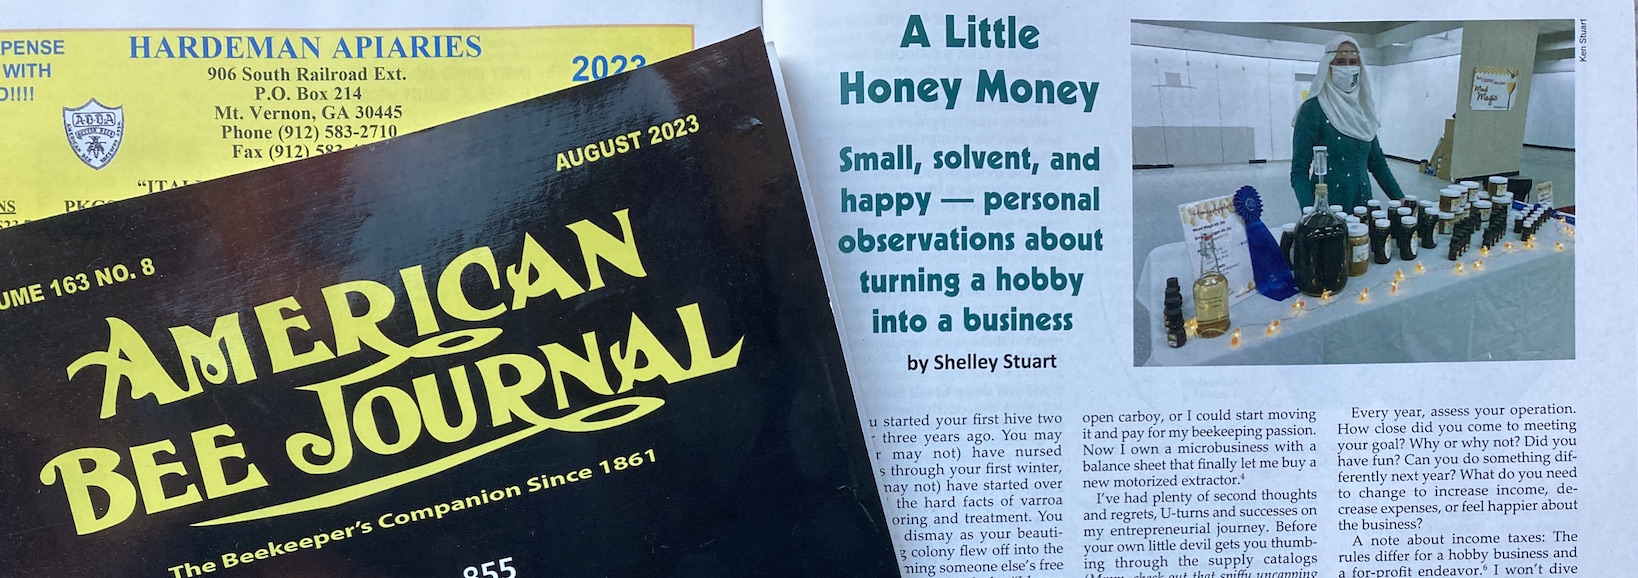 A little Honey Money article link